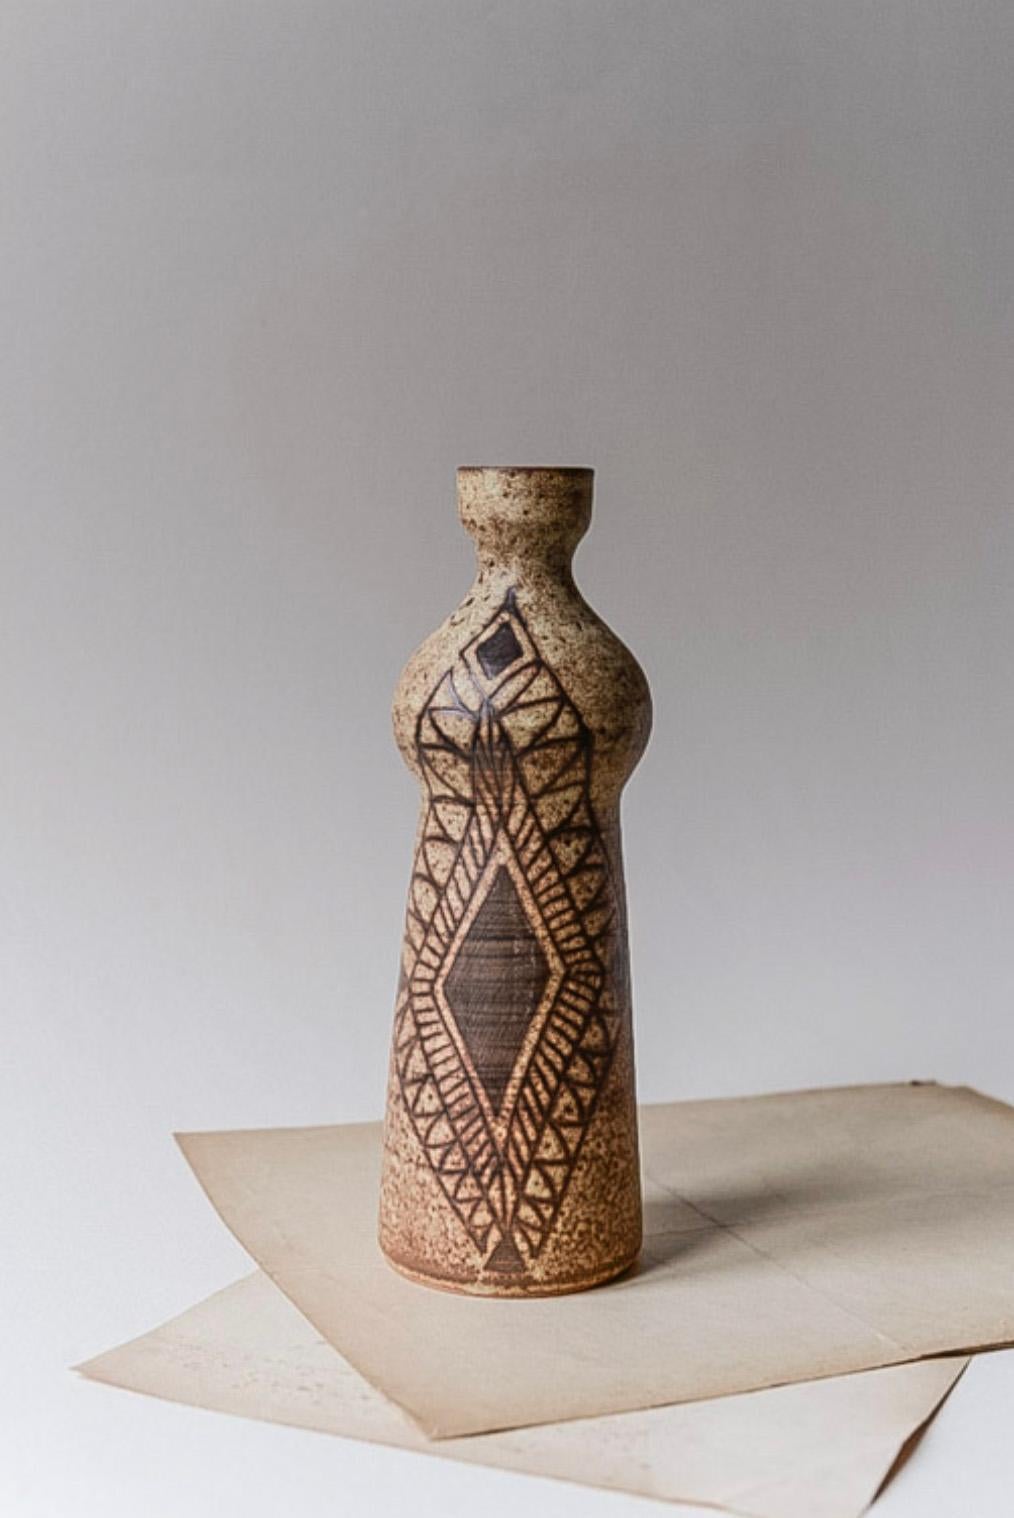 Vallauris Keramikvase von Jacques Fonck & Jean Mateo, CIRCA 1970.

Authentische Tonvase, handgefertigt von dem berühmten französischen Duo. Hervorragendes Design und Formen mit grafischen, handgemalten Mustern auf der Vorderseite.

Die Vase ist